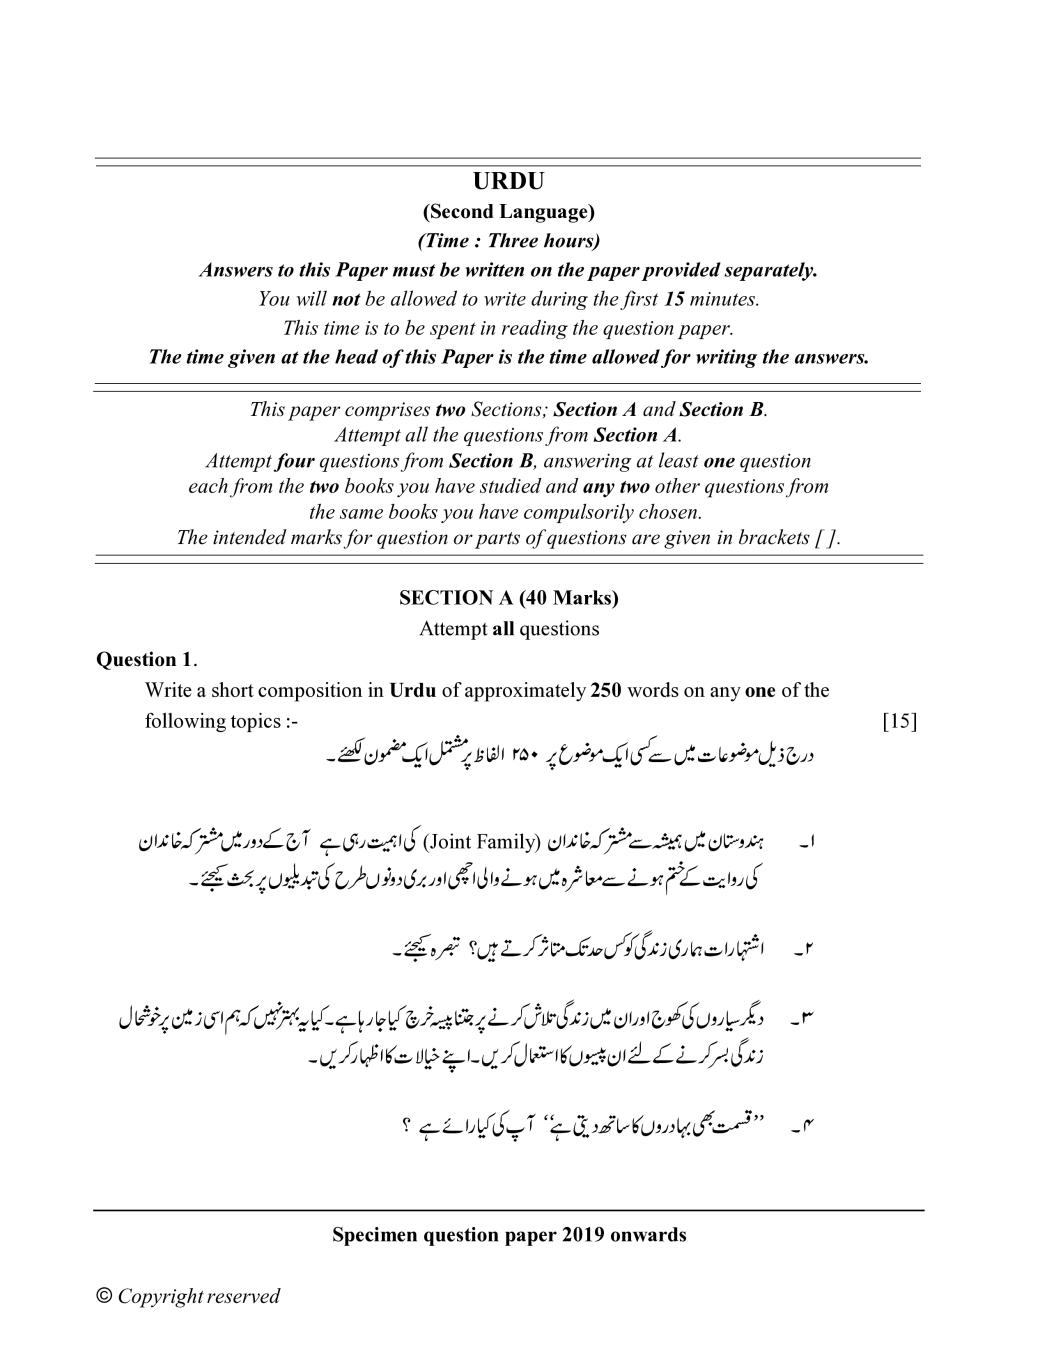 ICSE Class 10 Specimen Paper 2019 for Urdu  - Page 1